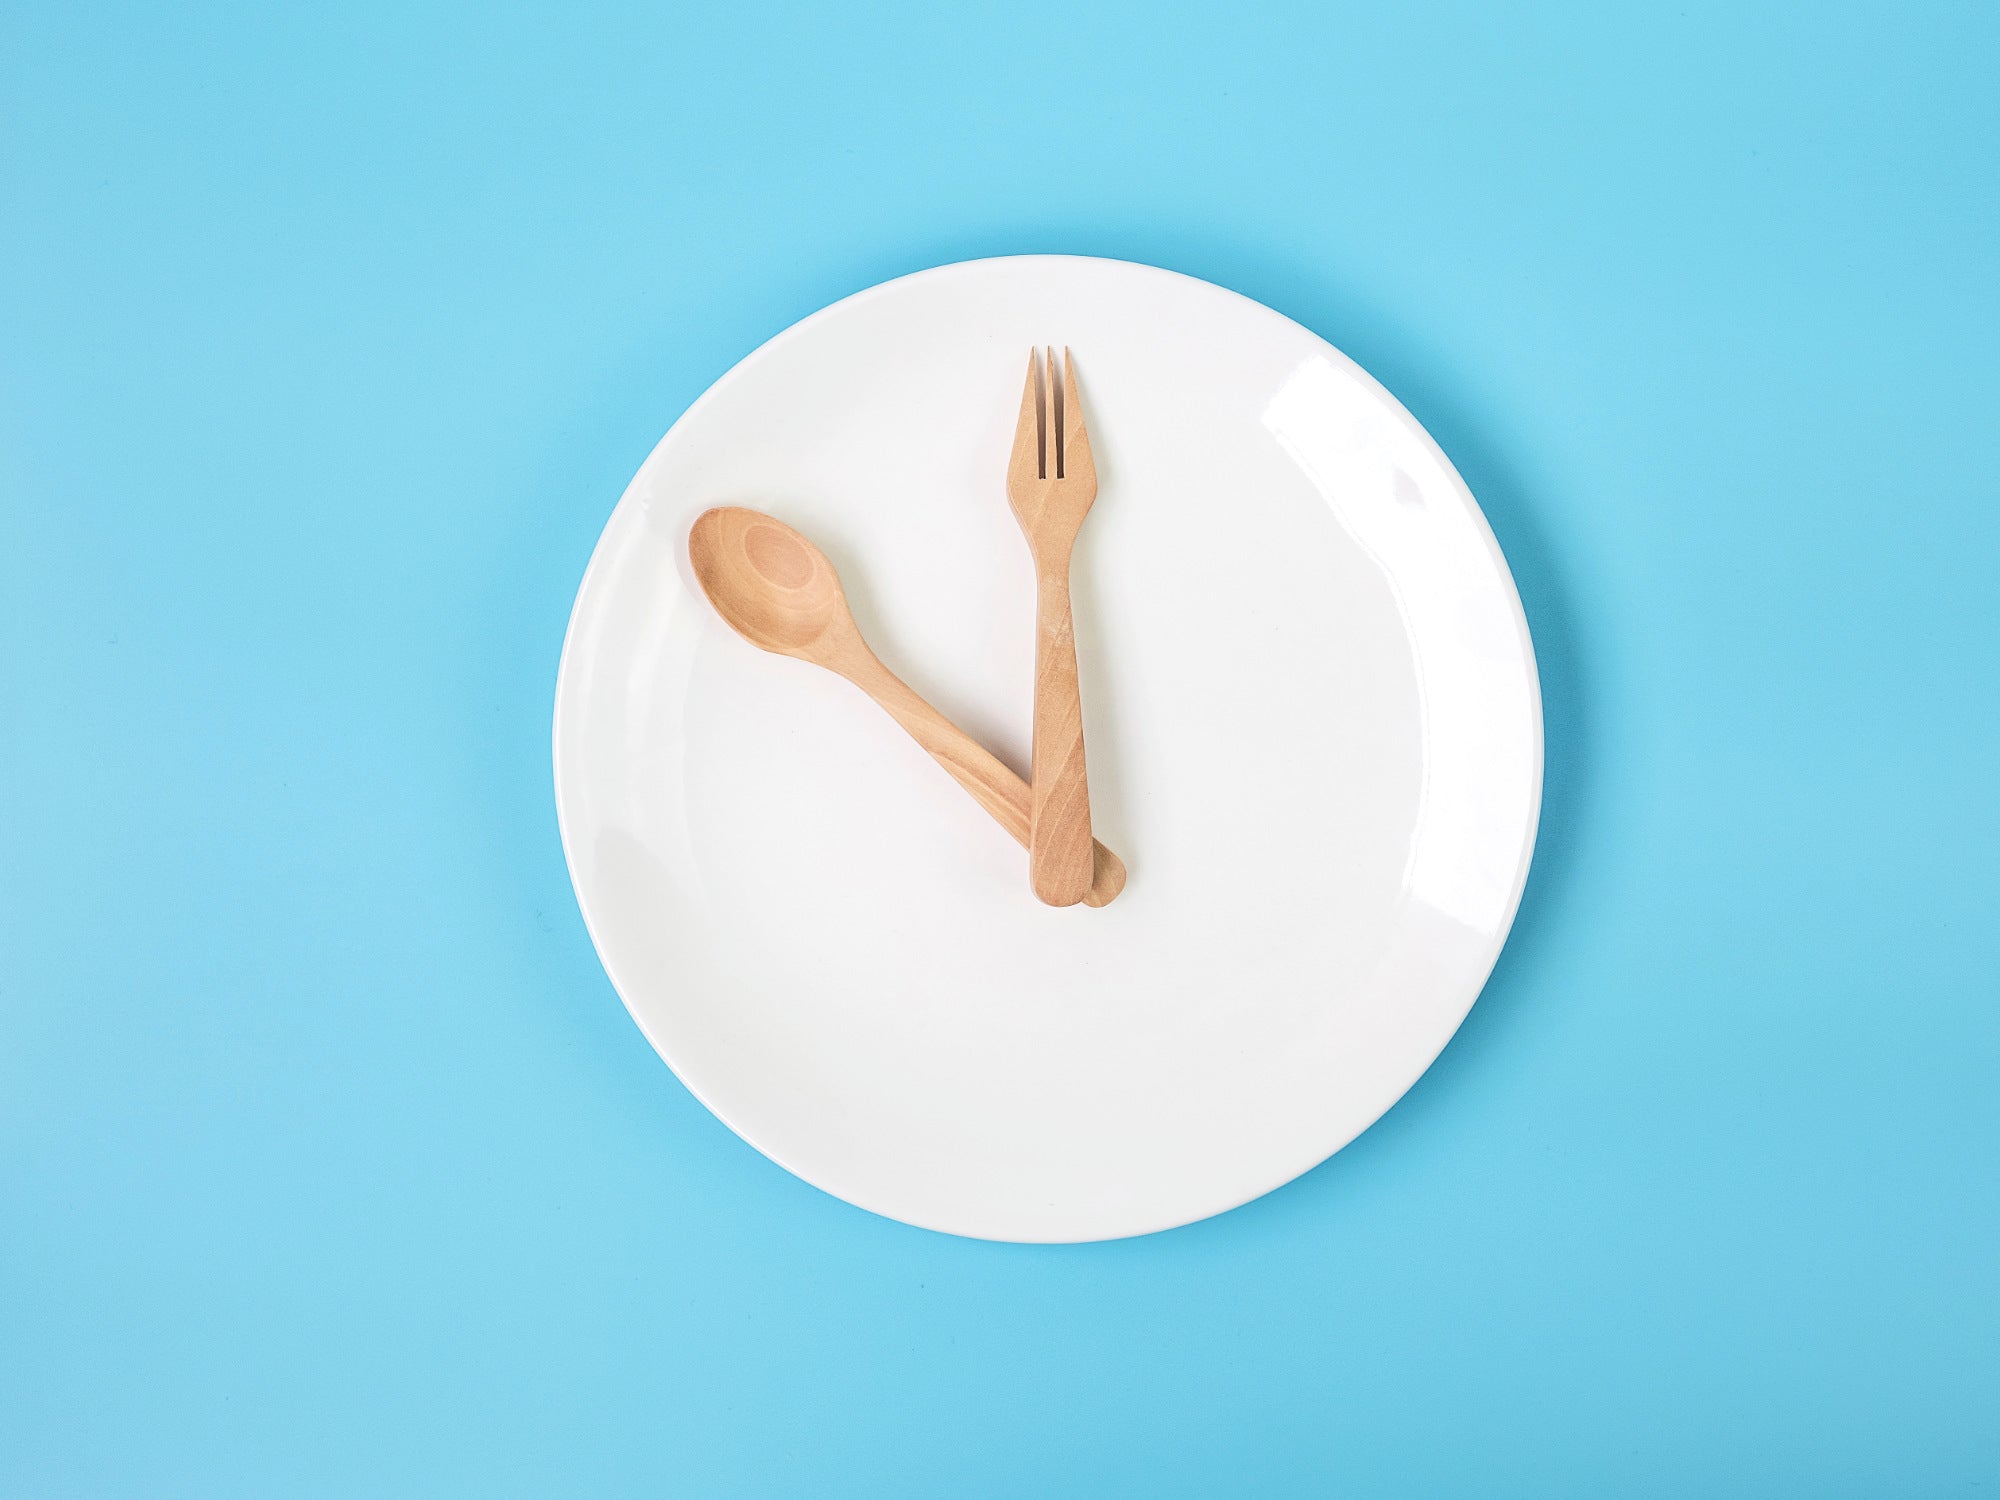 Dieta del digiuno intermittente o intermittent fasting